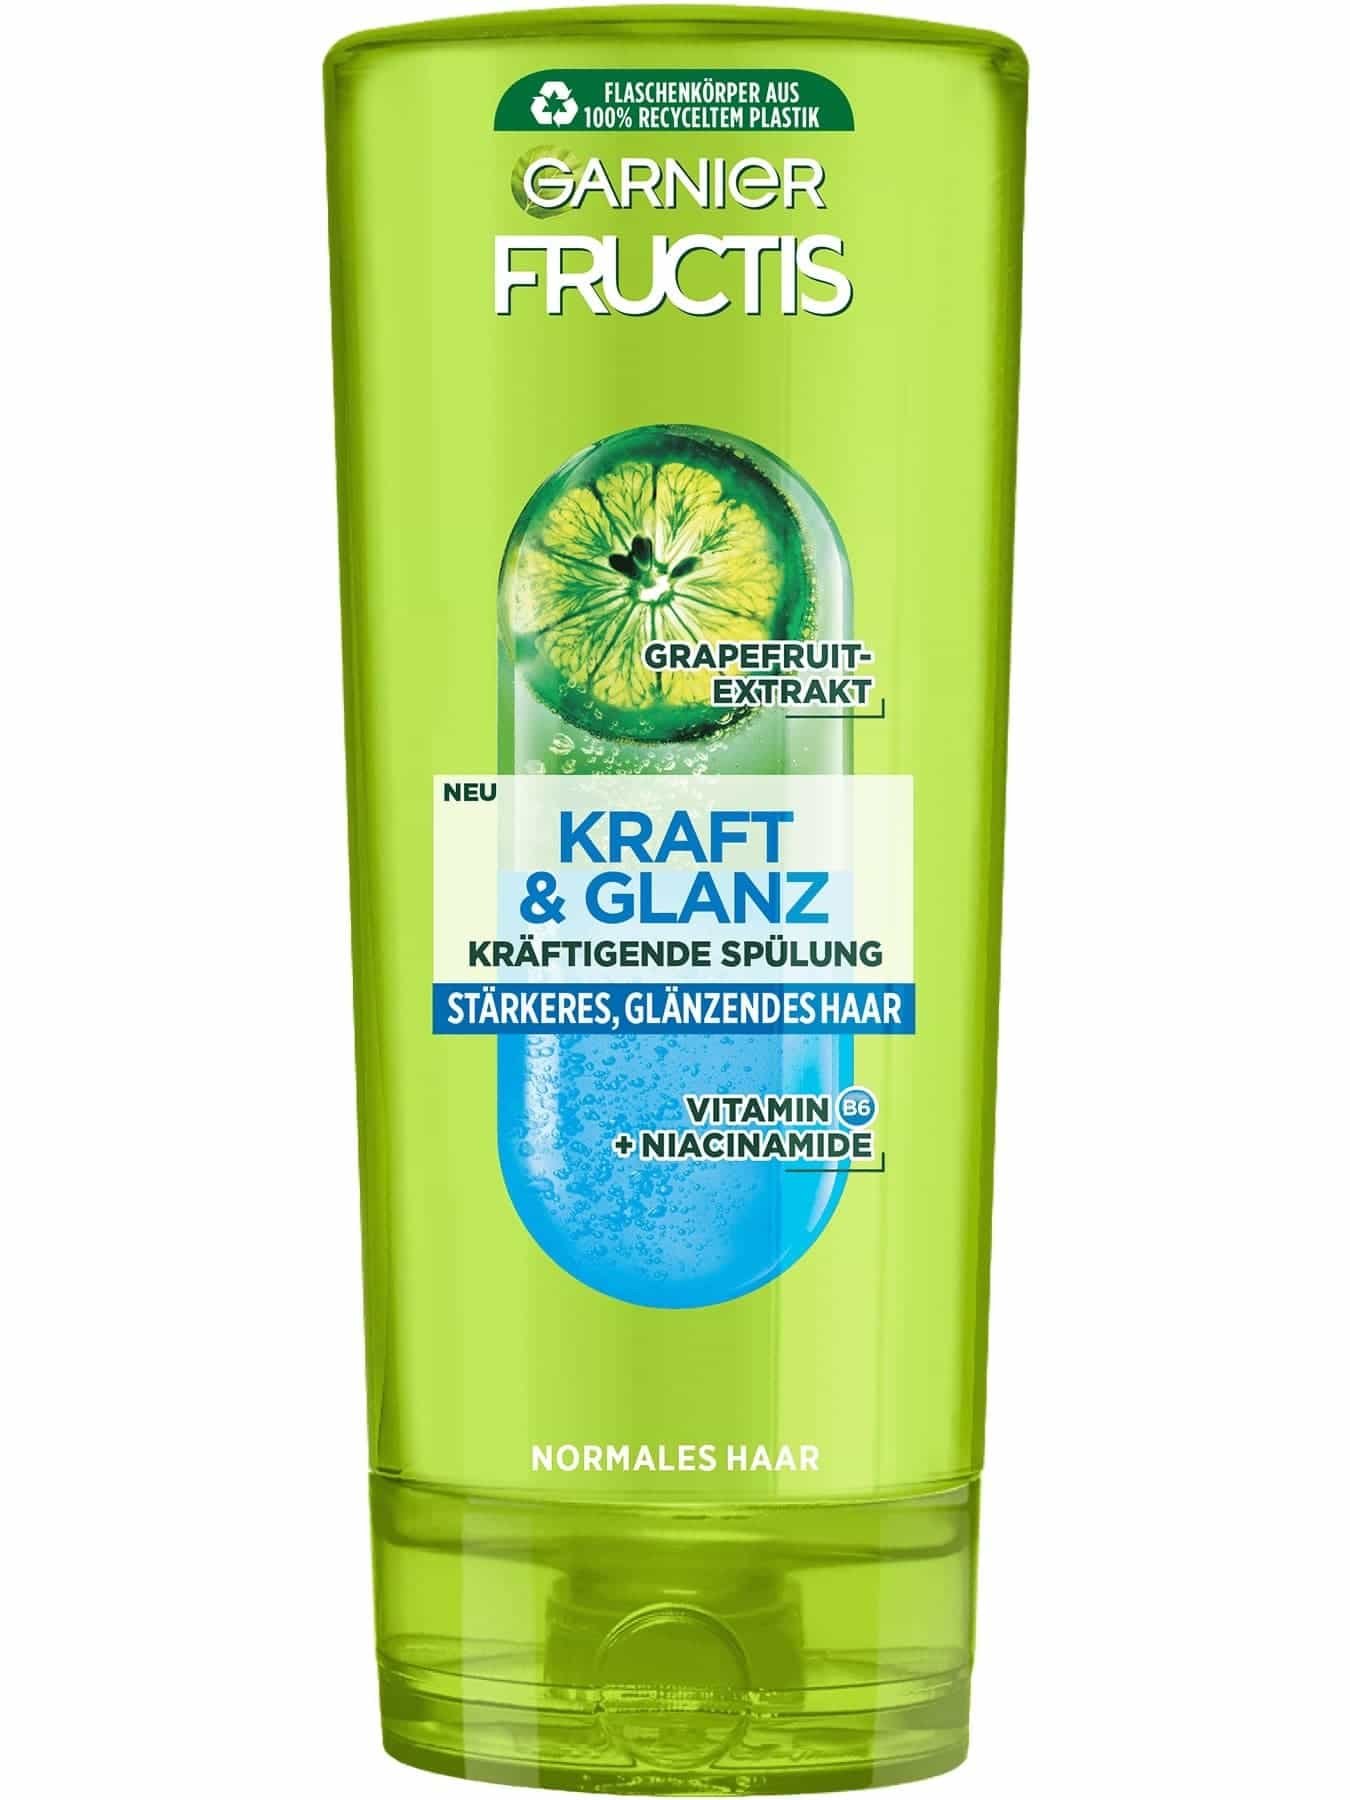 Fructis Kraft und Glanz Spülung Produktbild